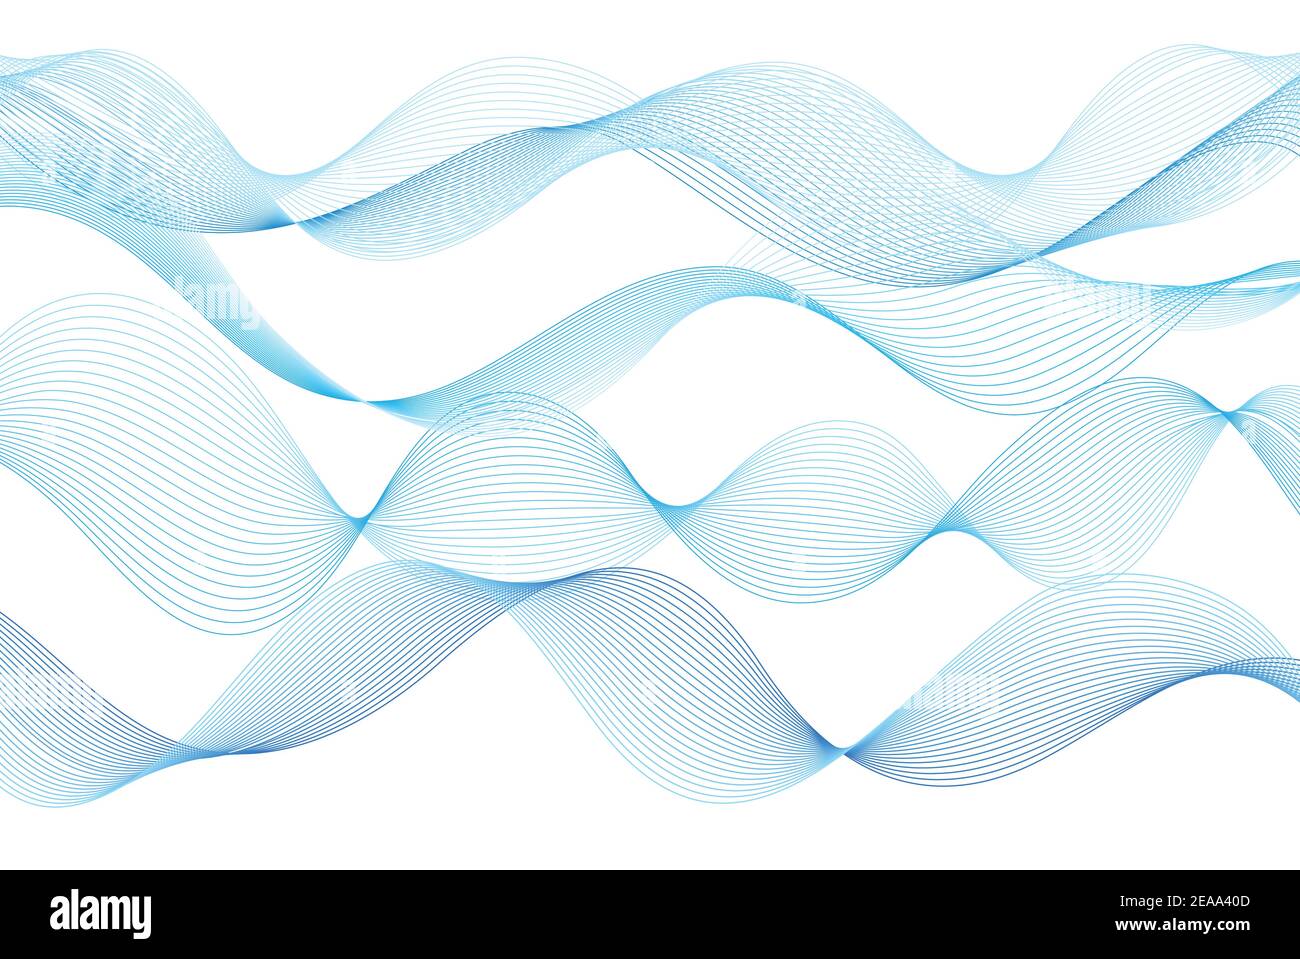 Astrarre linee d'onda colorate su uno sfondo bianco. Esempio di design wave per un sito web o una rivista Illustrazione Vettoriale